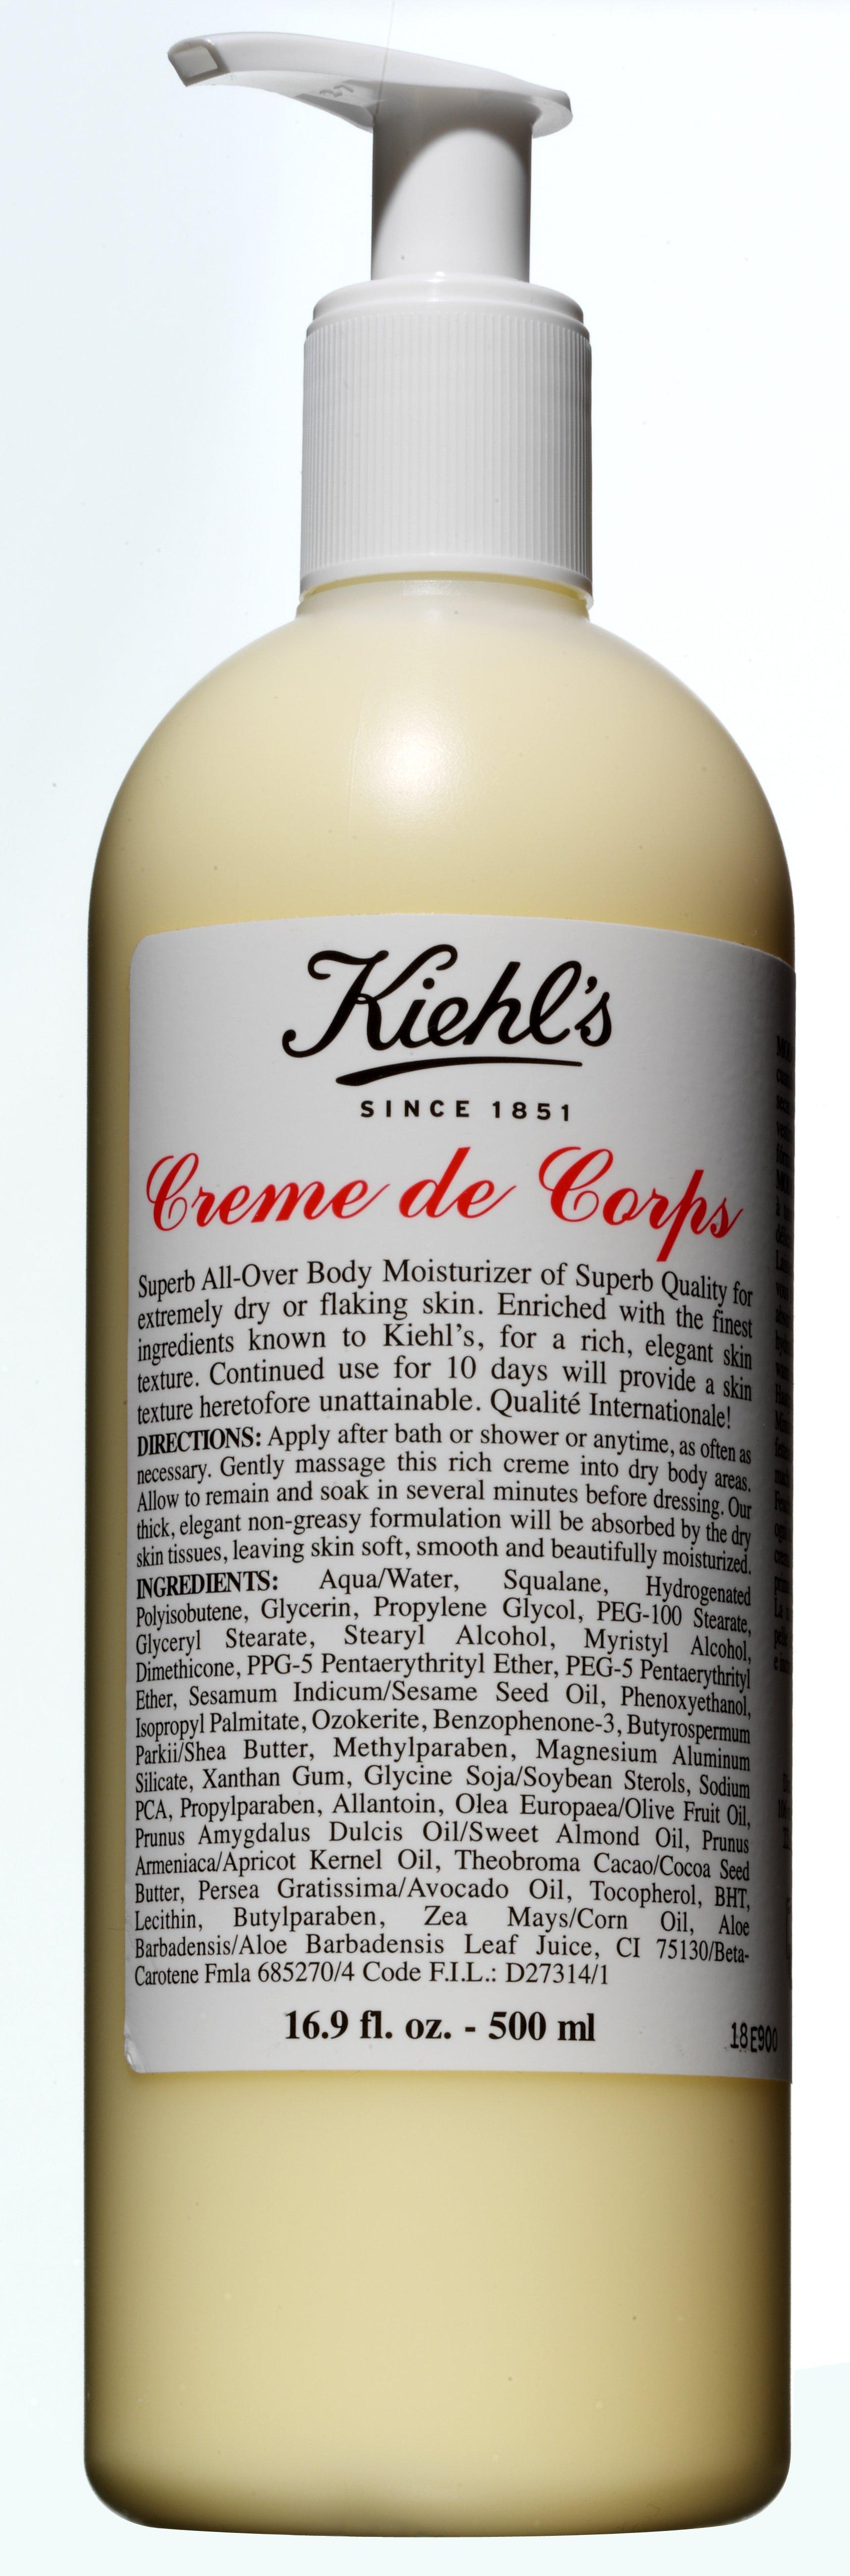 Kiehl's Crème Corps Creme de Corps with Pump 